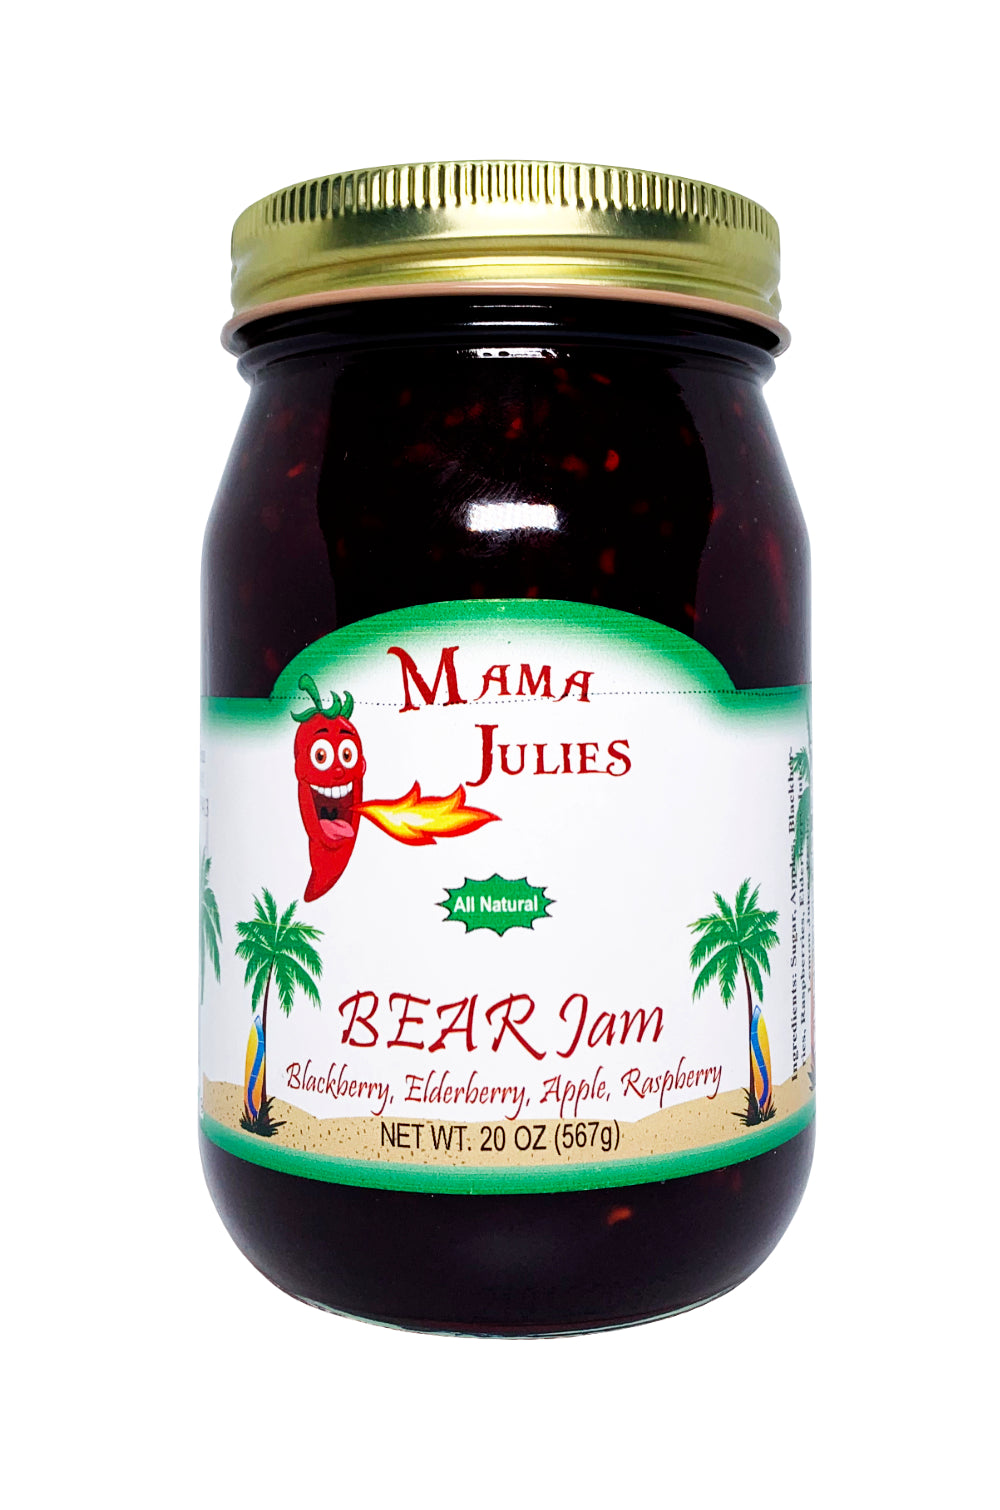 Mama Julie's BEAR Jam